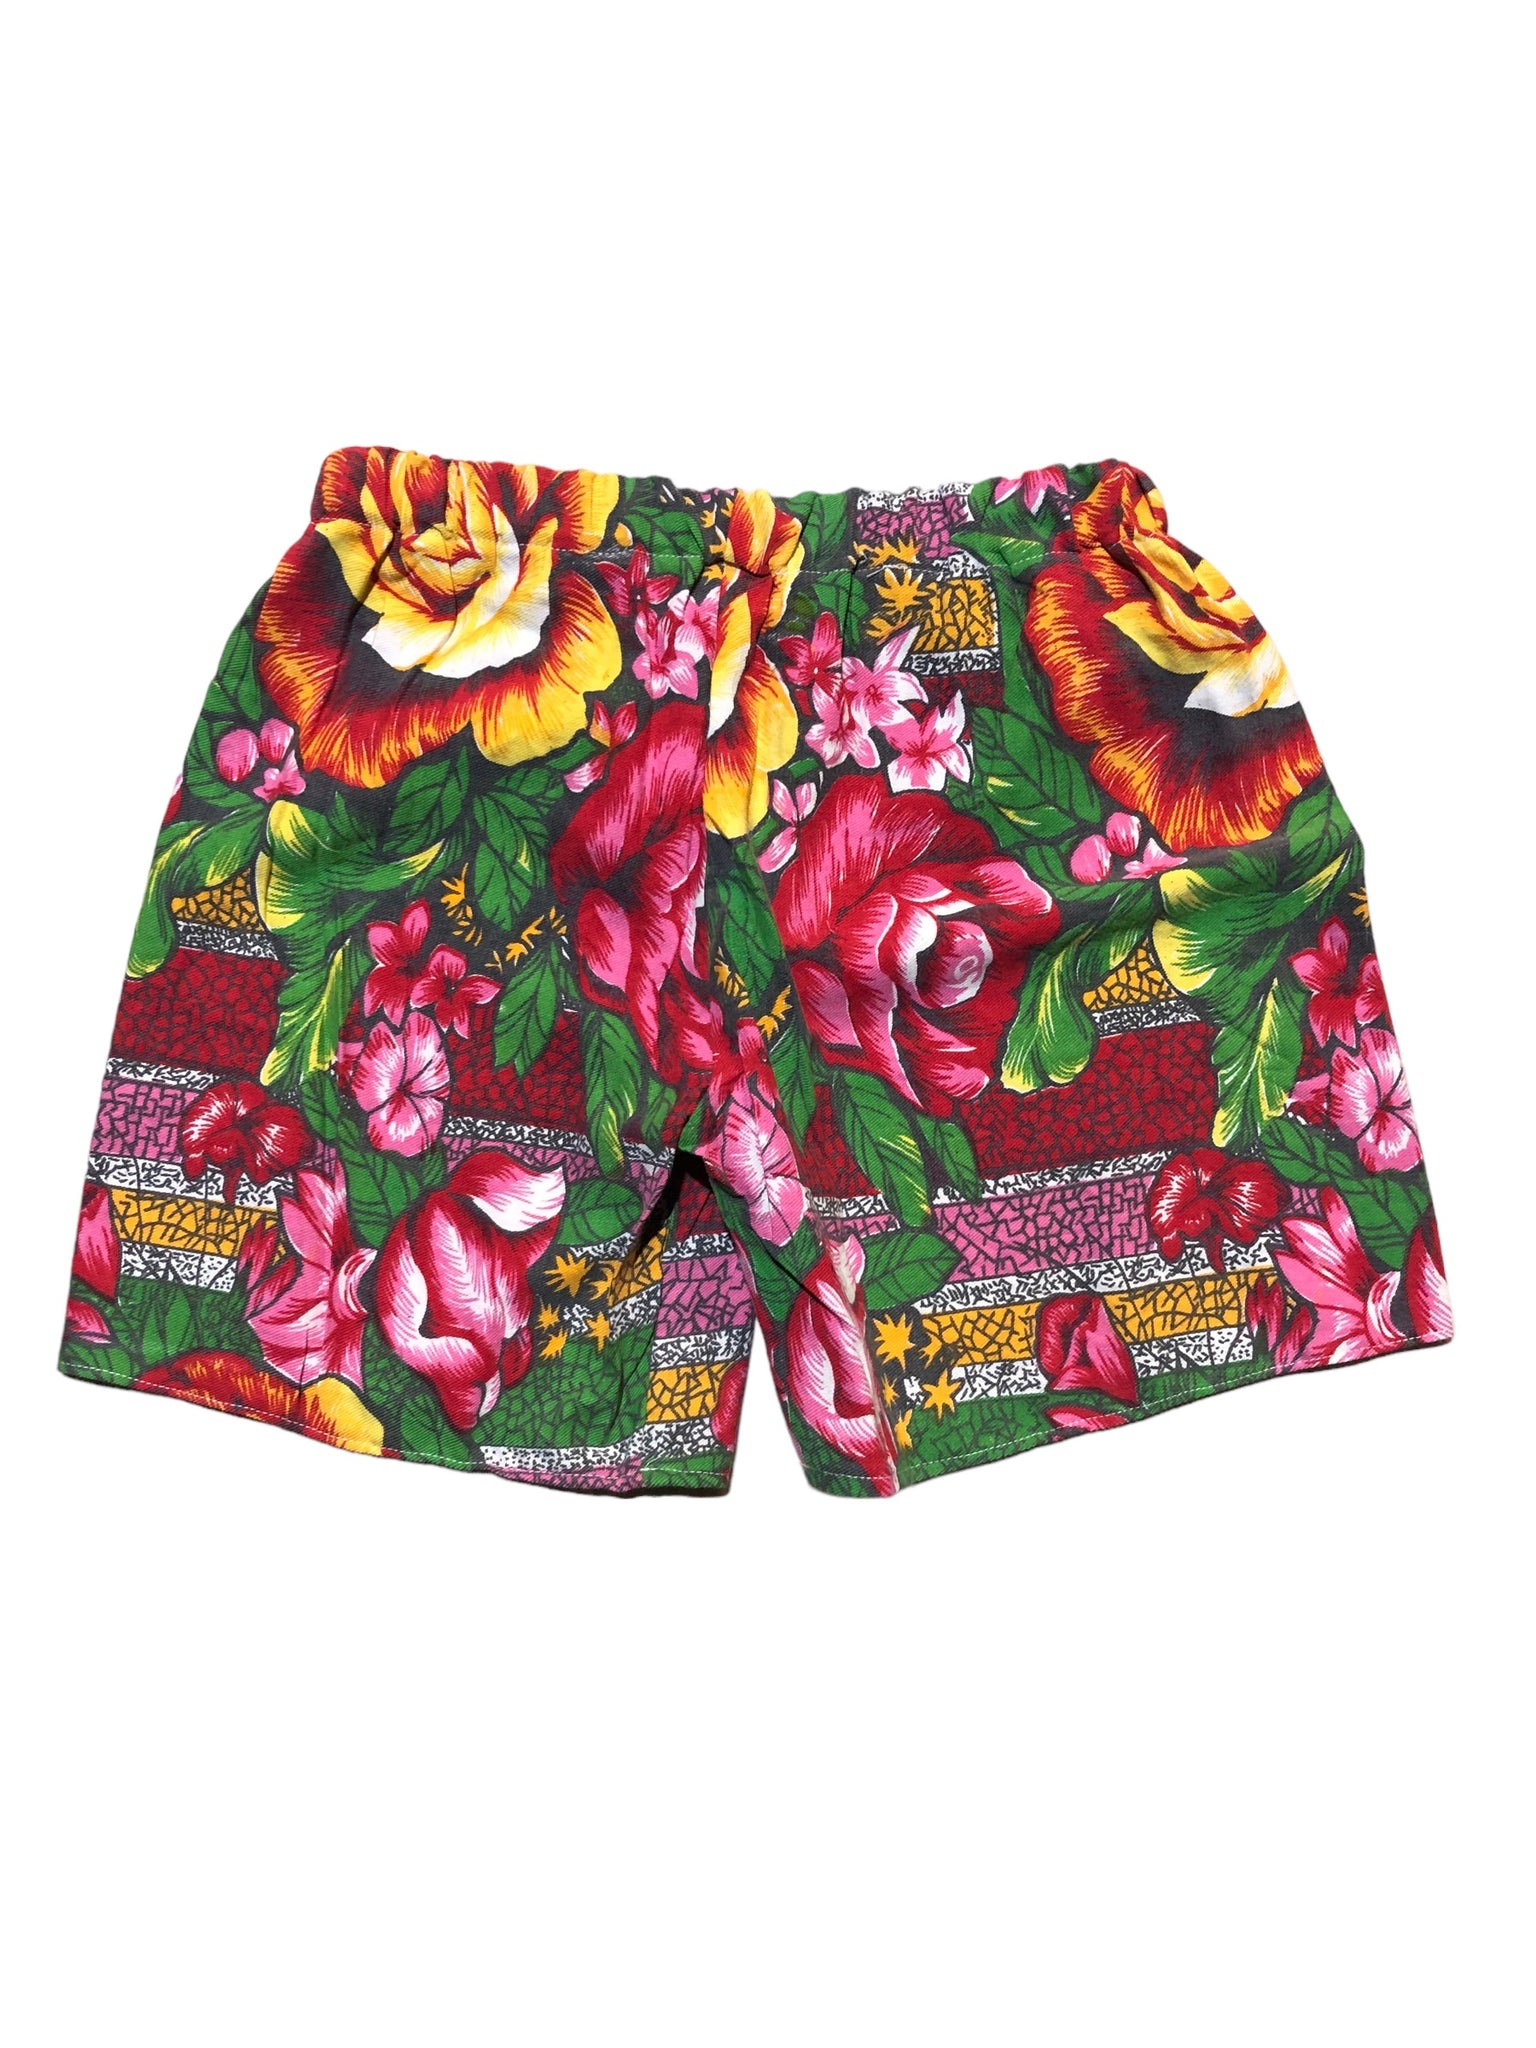 Custom Rose Shorts by Blim